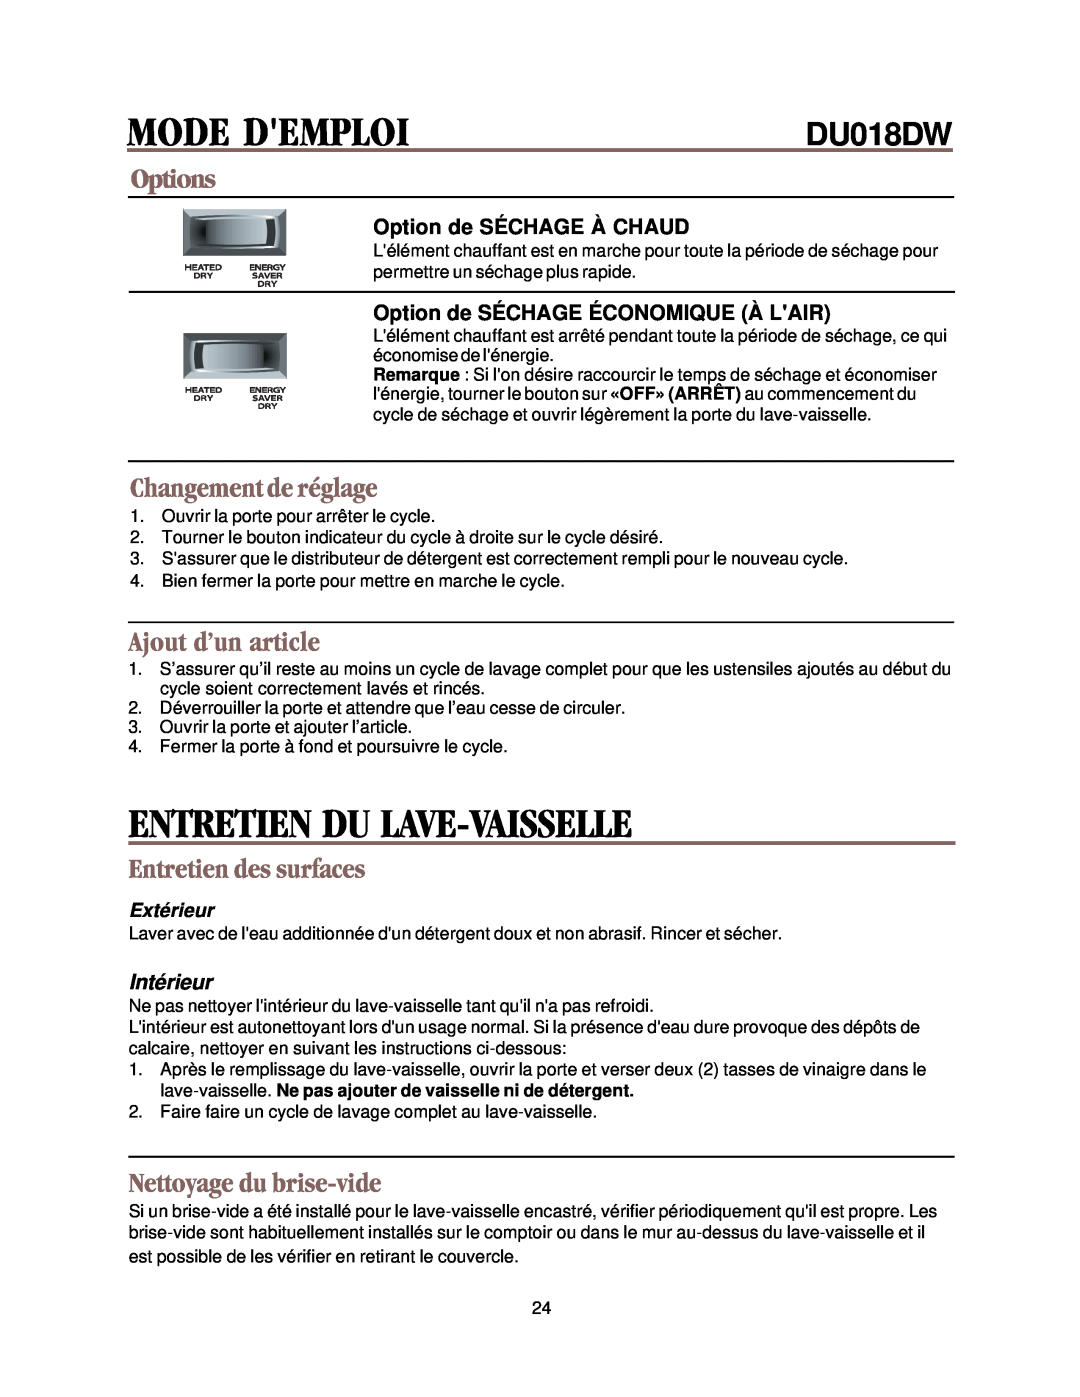 Whirlpool DU018DW Entretien Du Lave-Vaisselle, Changement de réglage, Ajout d’un article, Entretien des surfaces, Options 